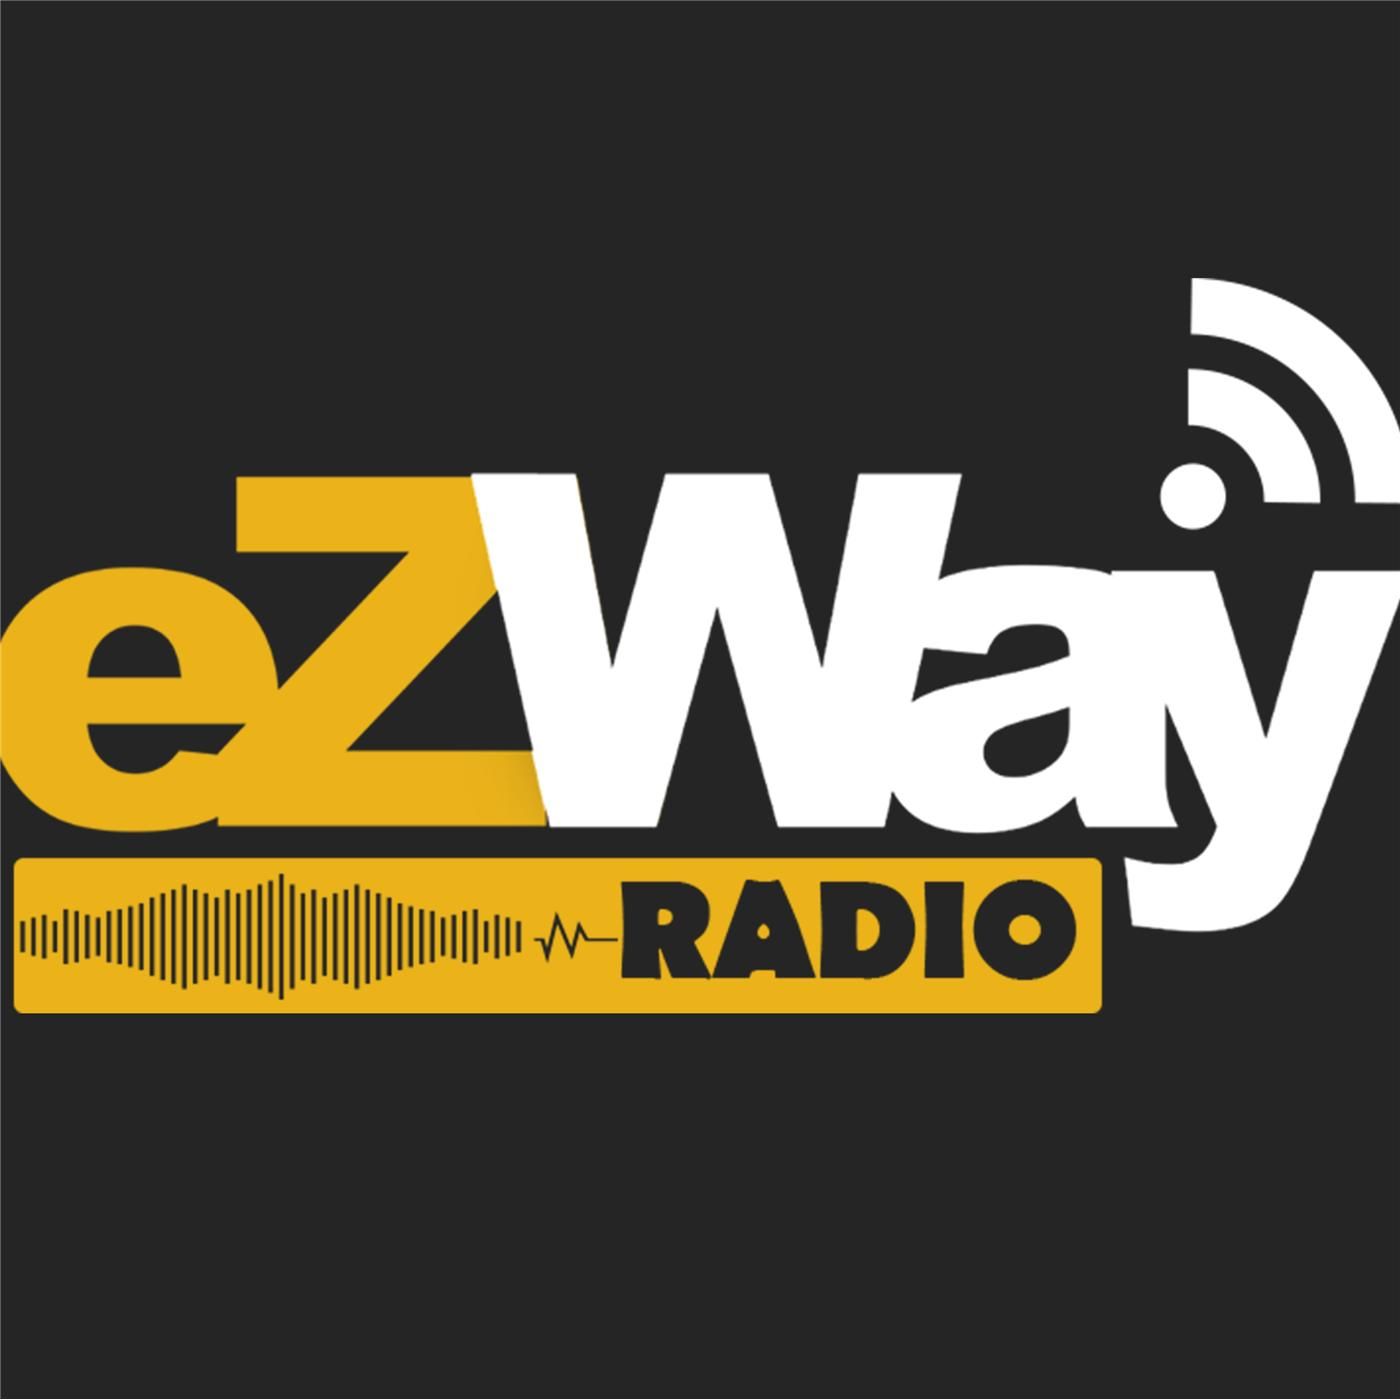 EZ WAY:Eric Zuley